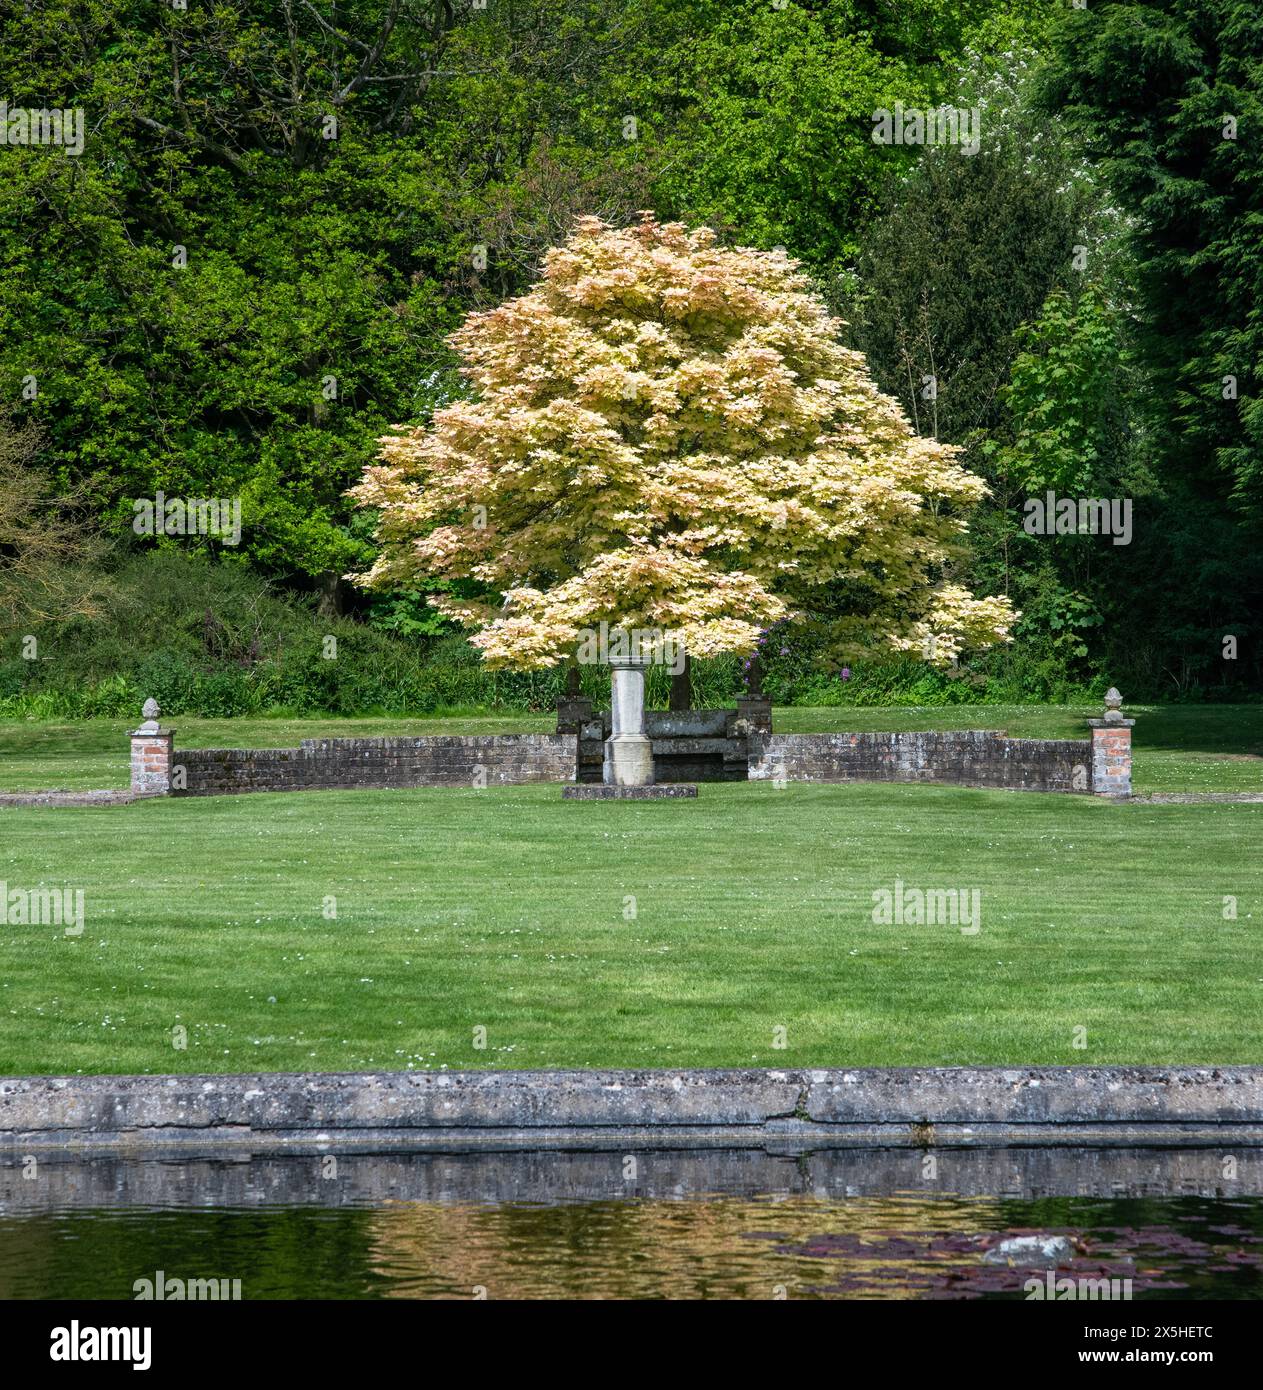 Parc verdoyant avec un arbre solitaire à feuilles dorées frappant à côté d'un étang d'eau réfléchissant calme Banque D'Images